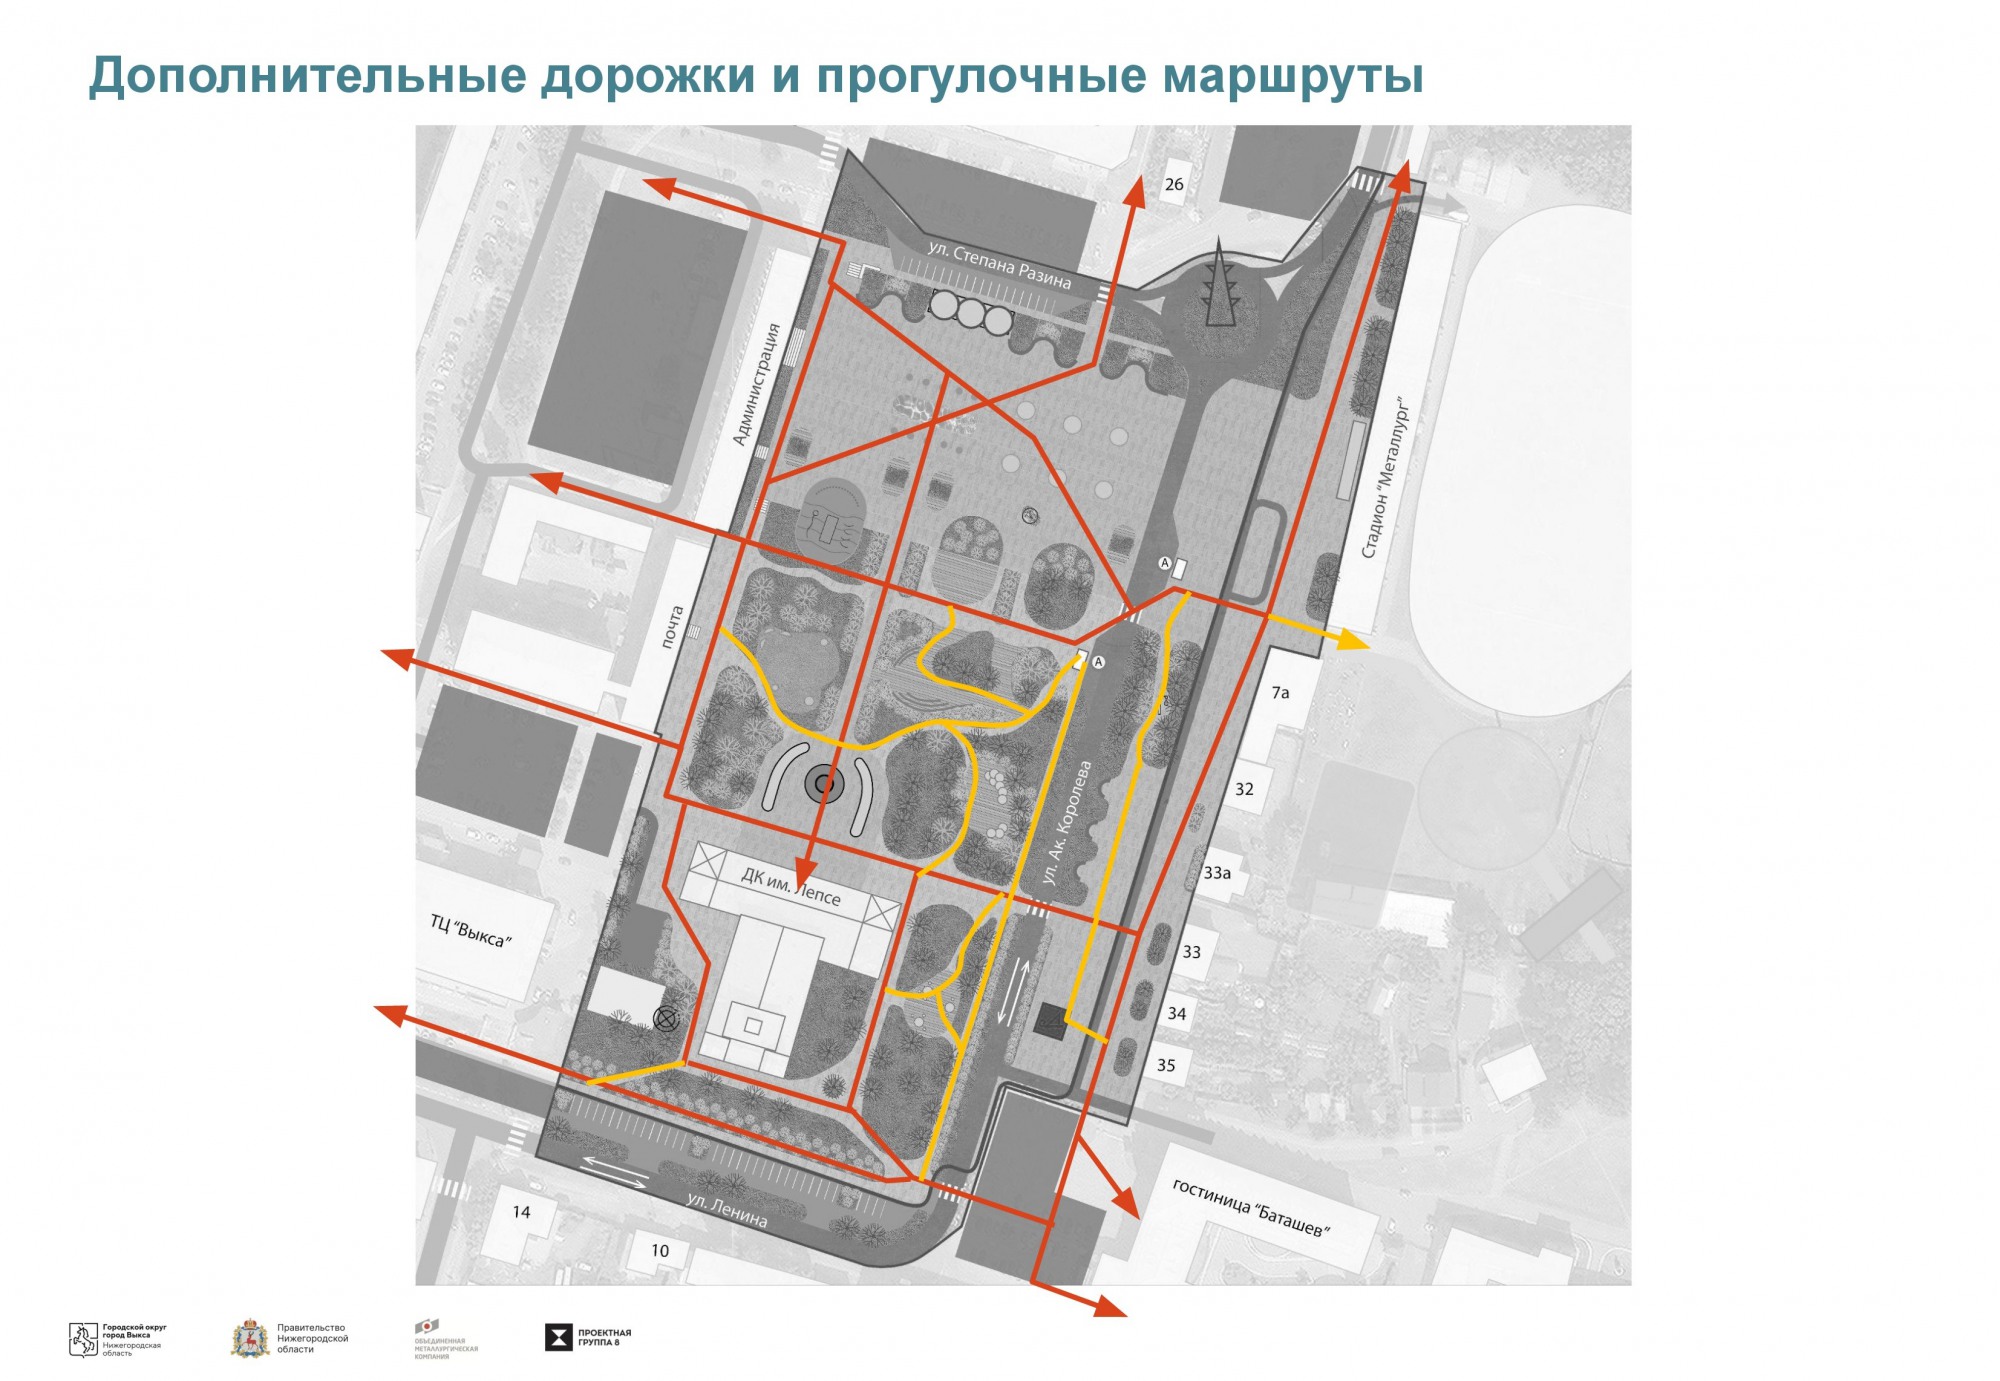 Дорога у ДК Лепсе превратится в пешеходную зону: опубликована концепция благоустройства Красной площади